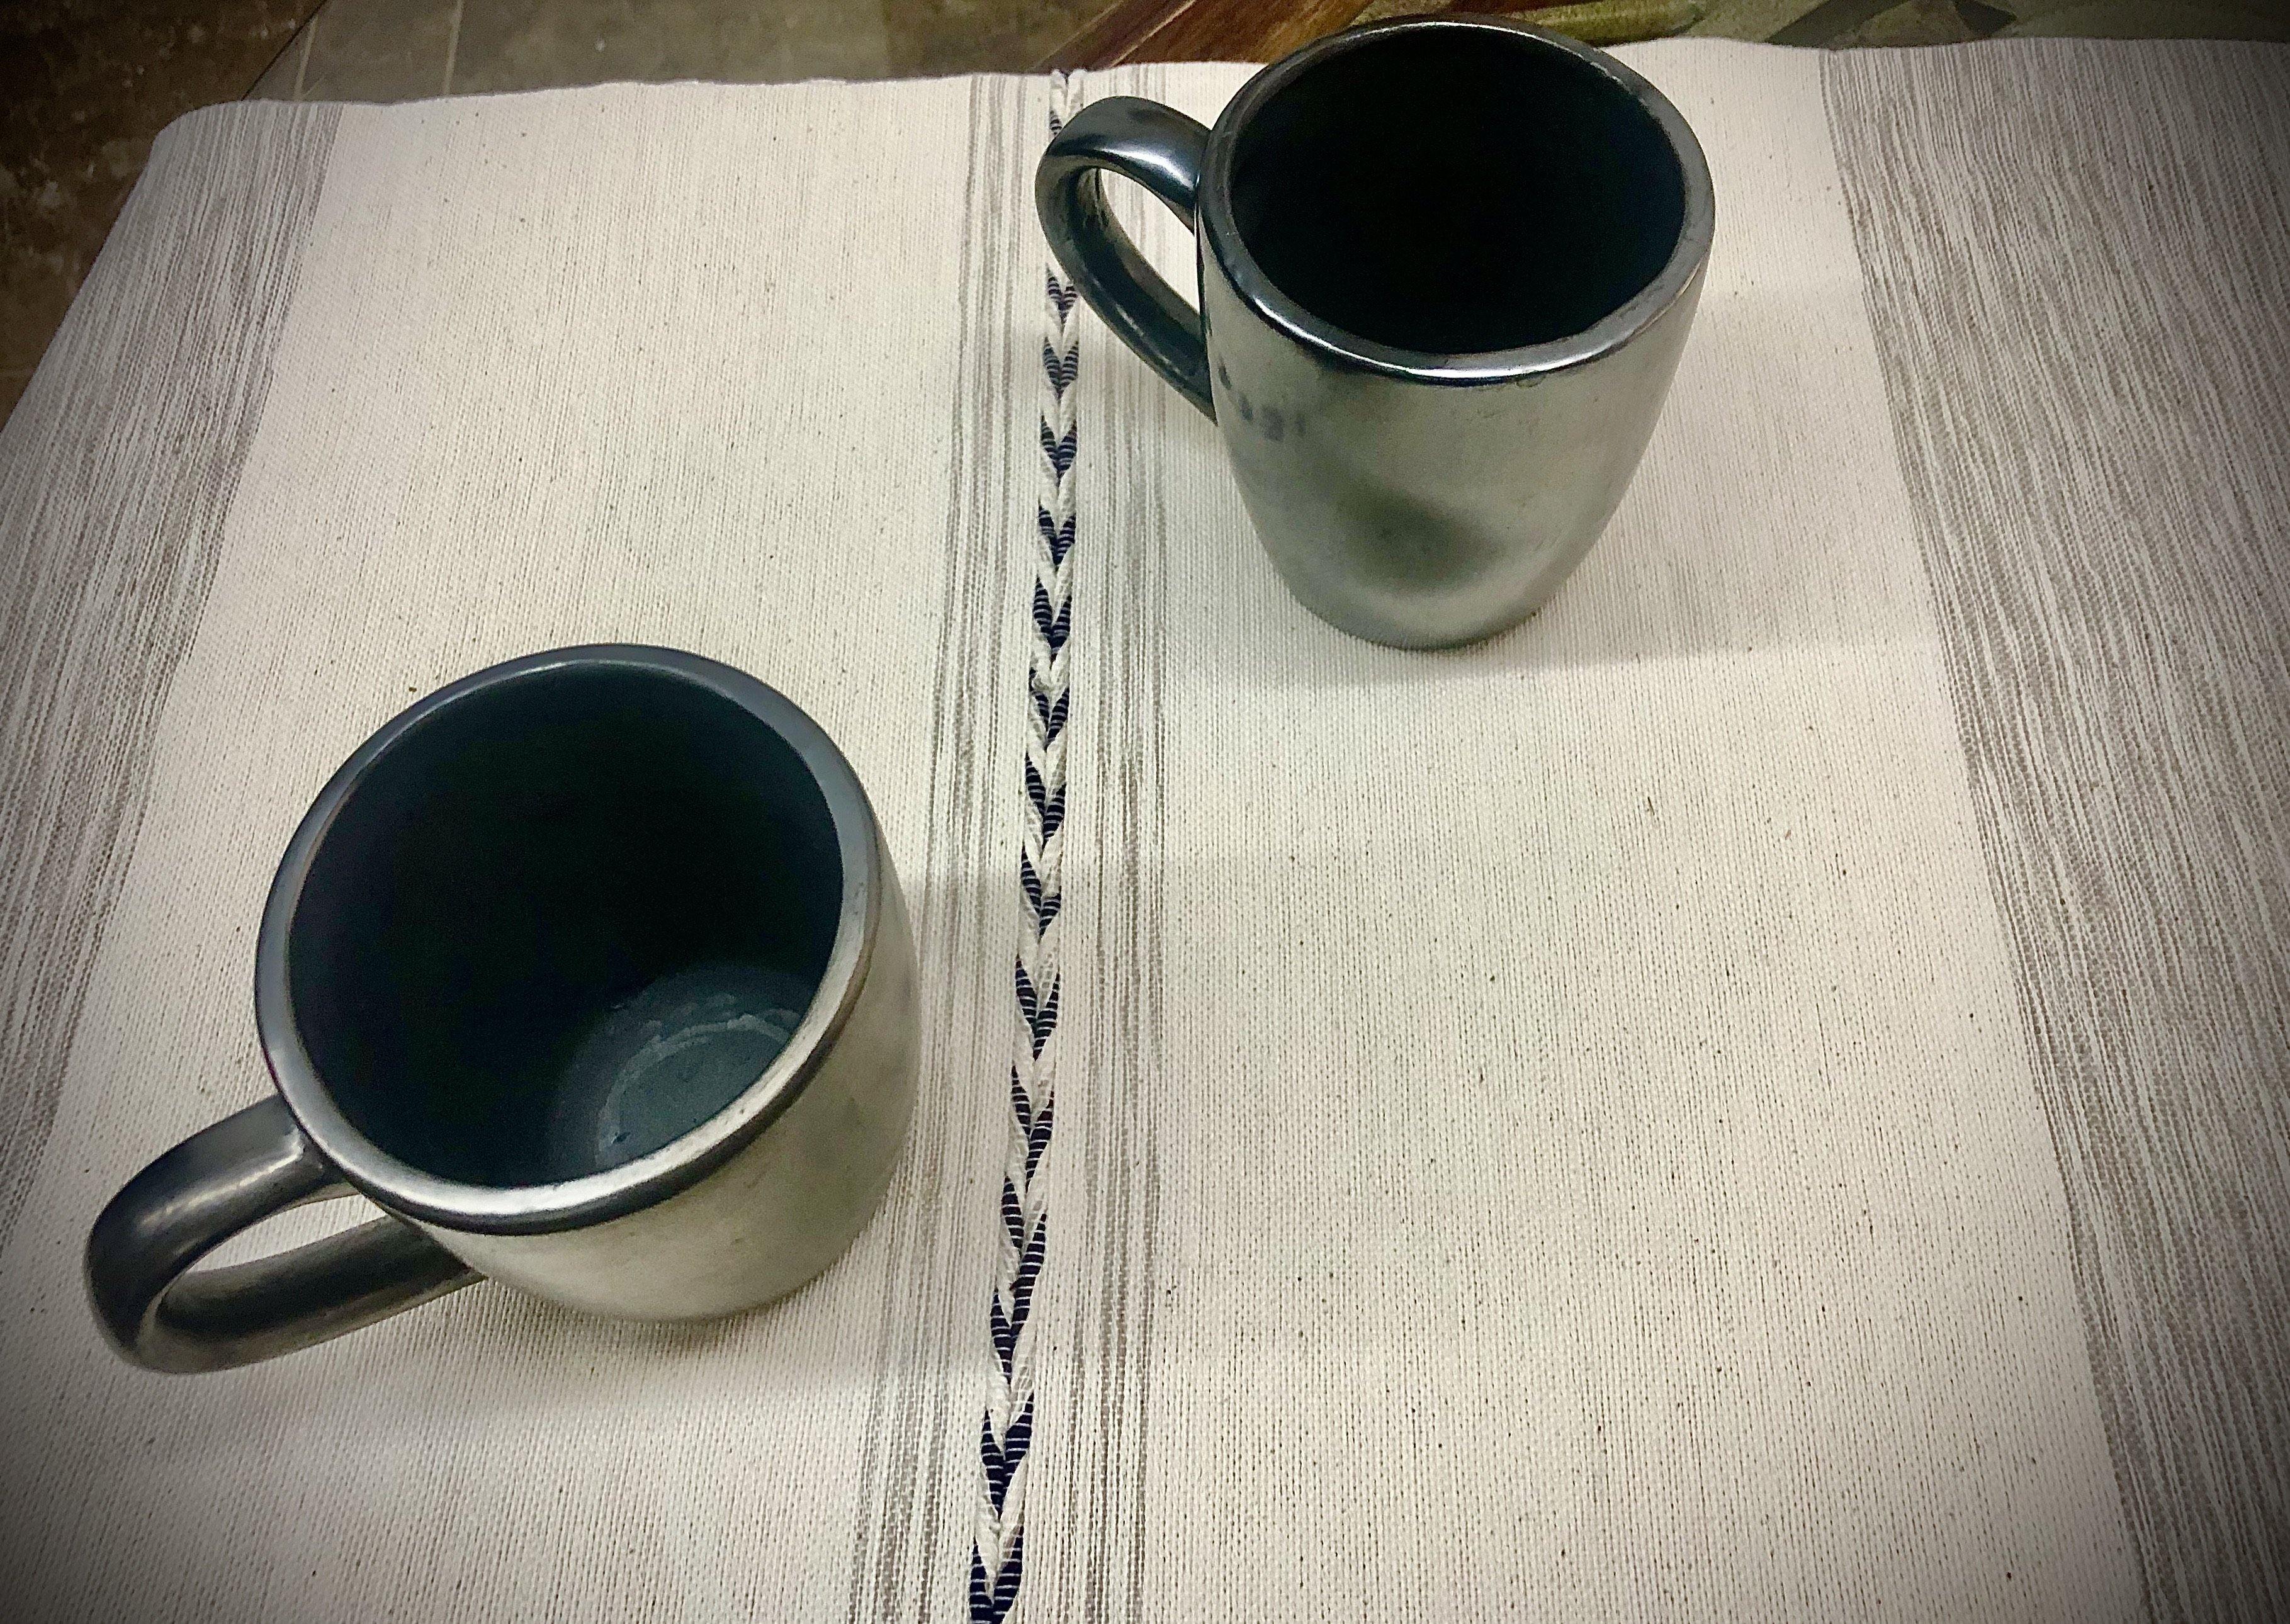 Barro Negro Coffee Mugs (2 pc set) - HomageMade 